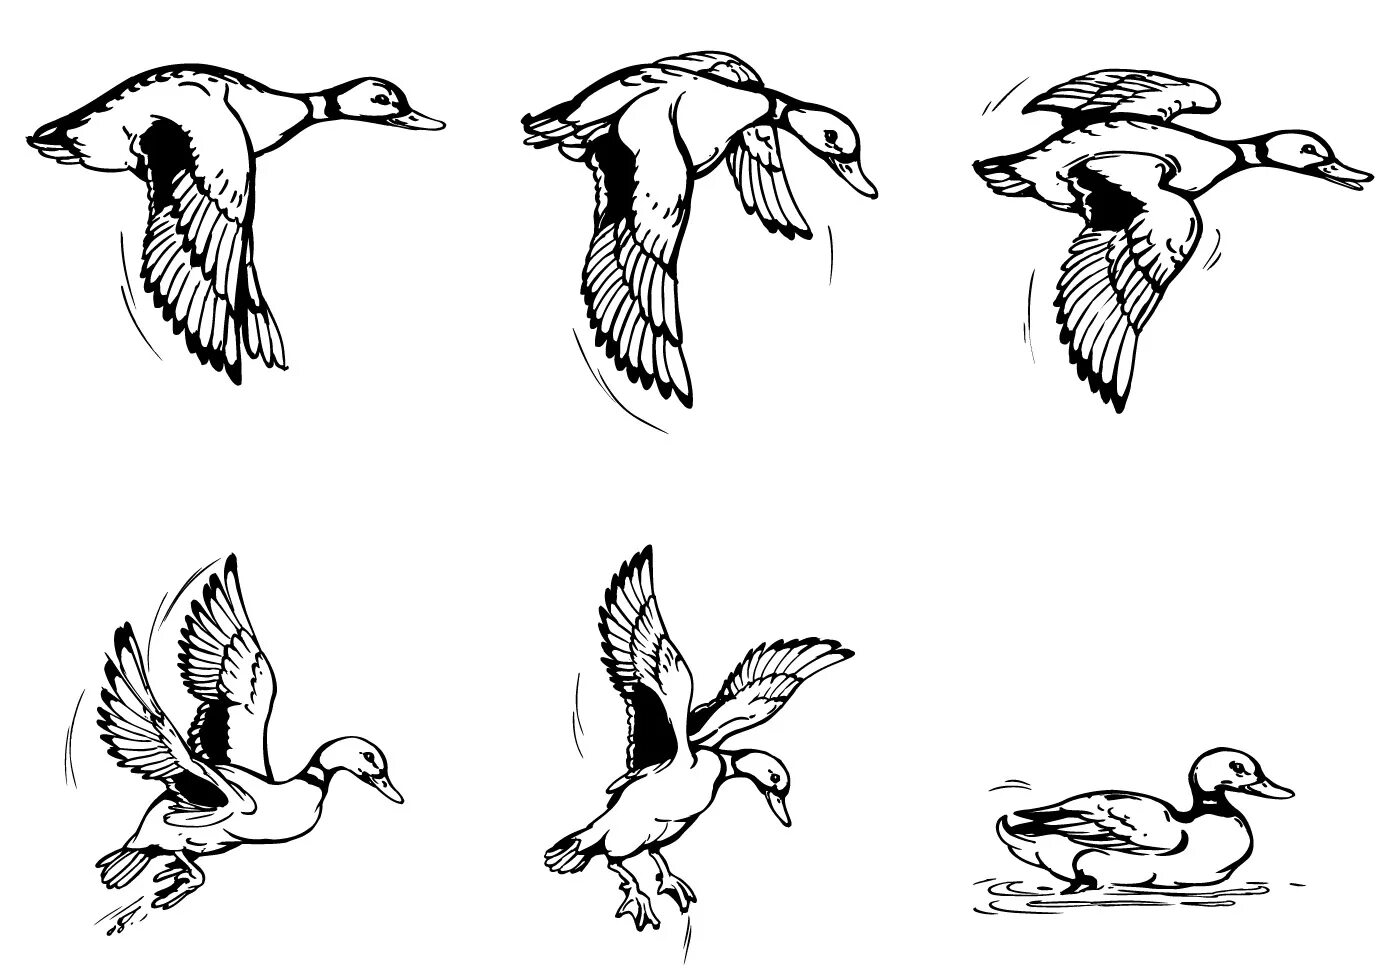 Птицы в движении. Зарисовки птиц в движении. Зарисовки птиц в полете. Птицы в разных ракурсах. Методы полет птицы